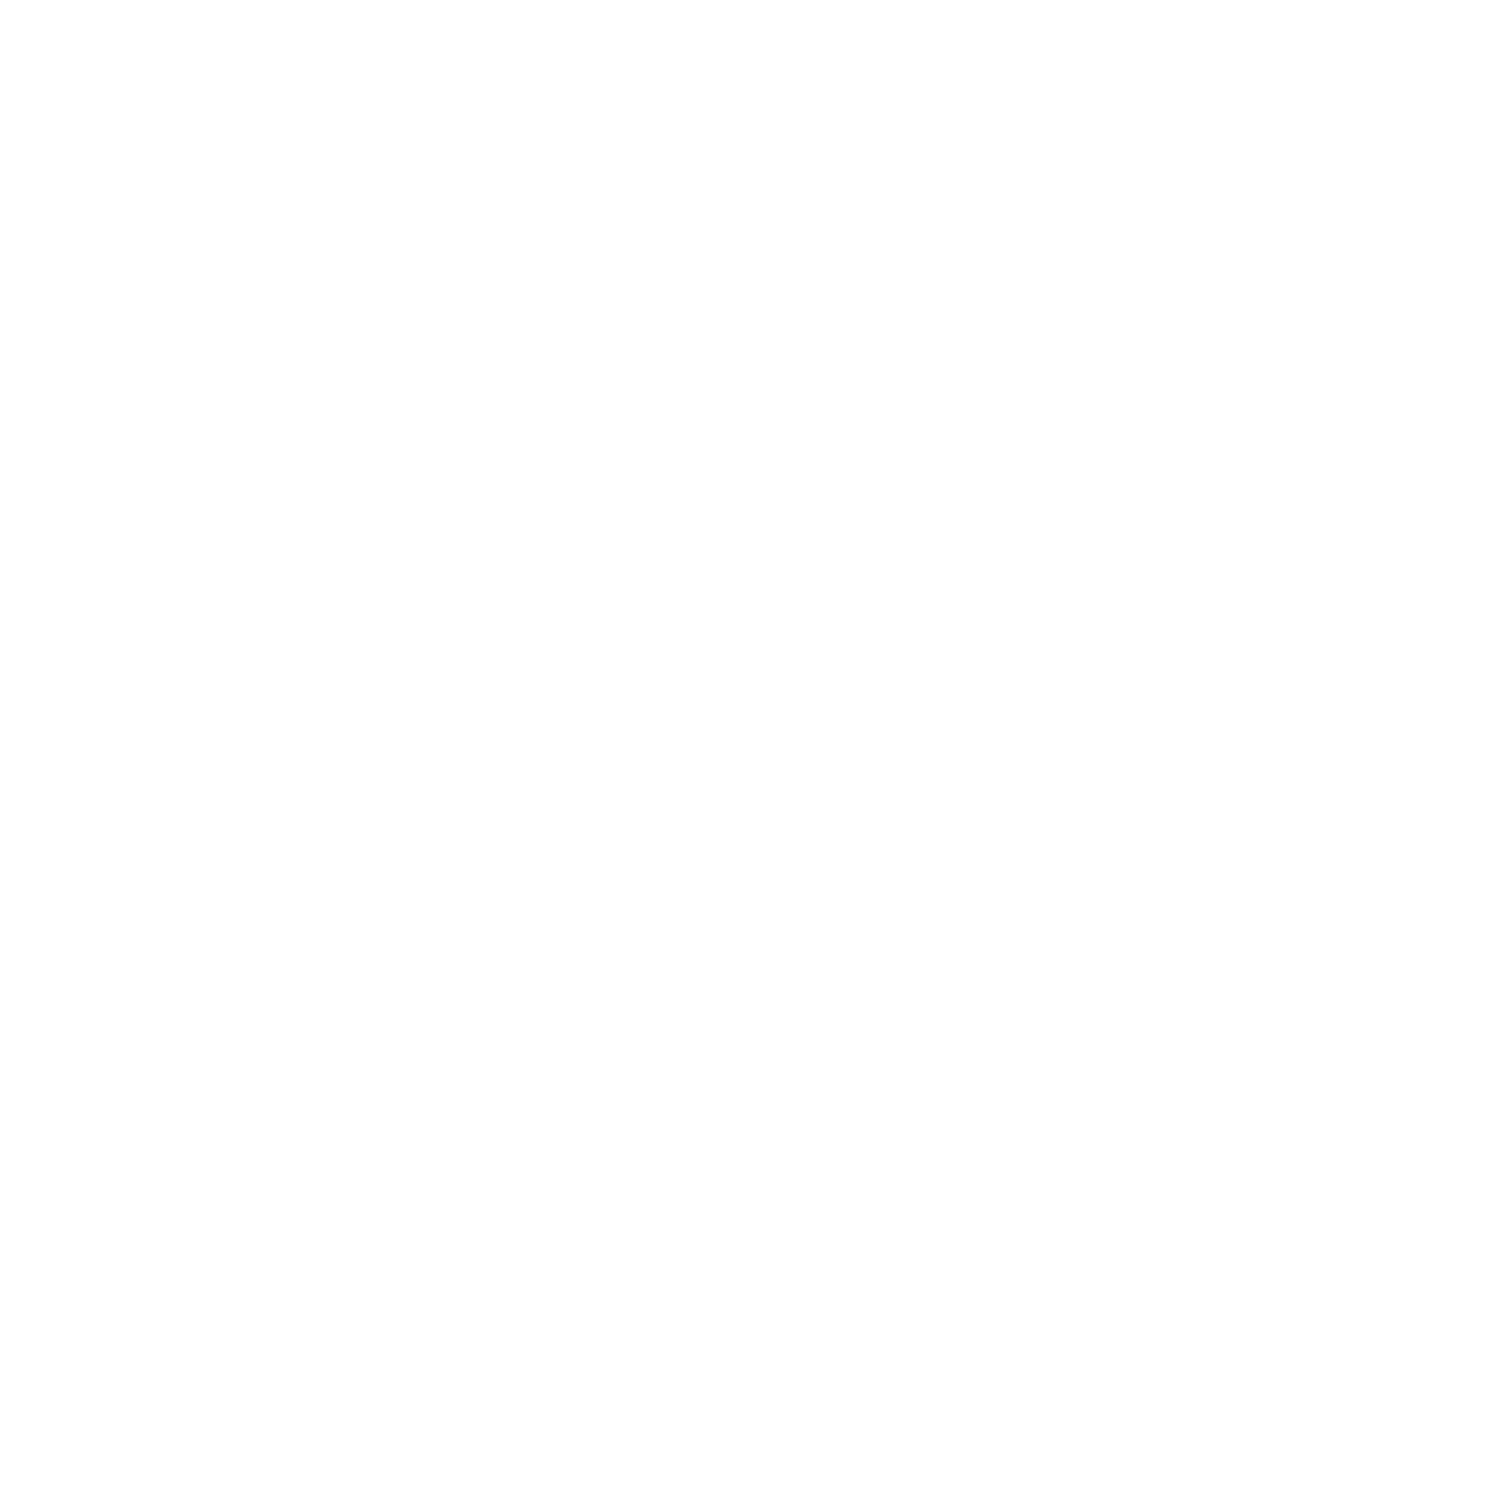 1 Together